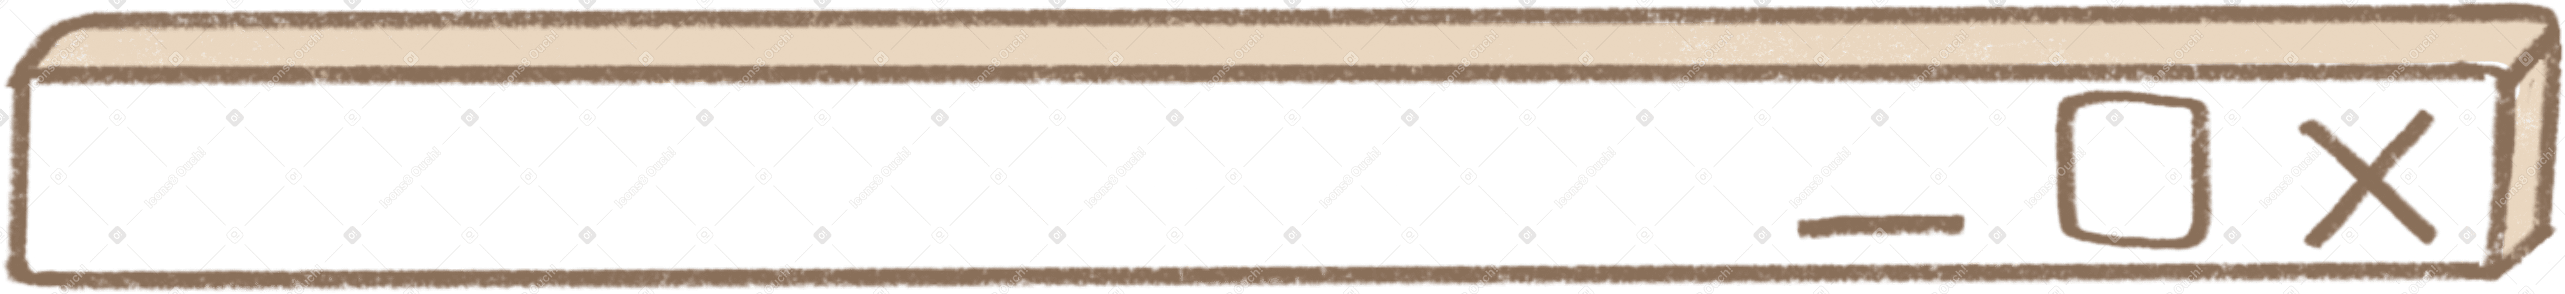 window bar Illustration in PNG, SVG